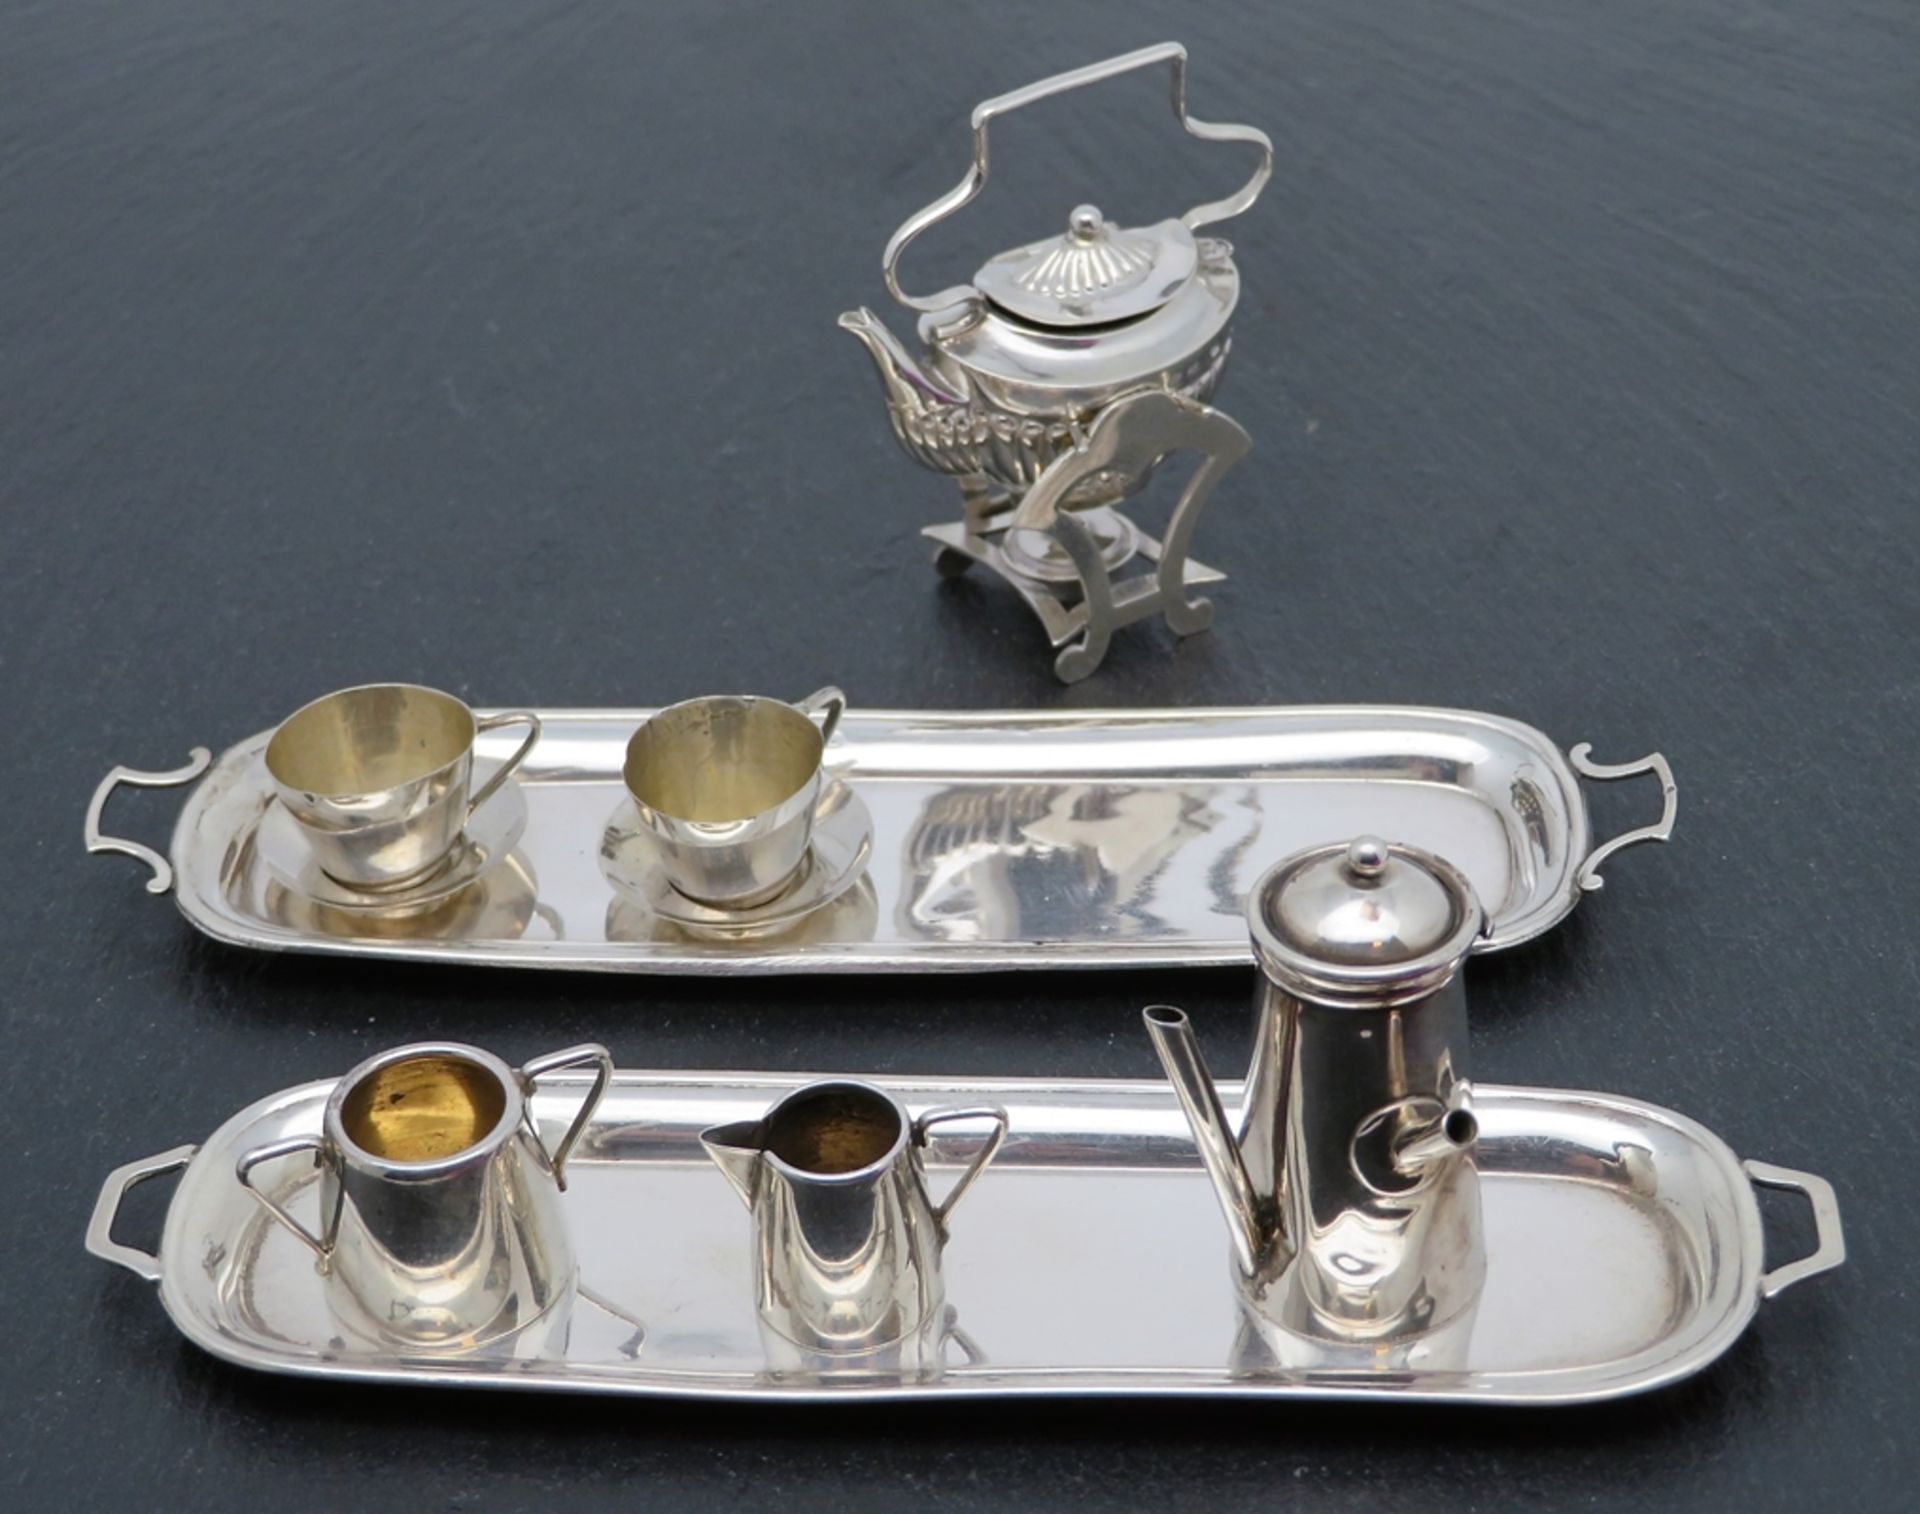 Puppenstubenzubehör/Miniatursilber, England, 11 teiliges Service, Silber 925/000, gepunzt, 63,7 g,